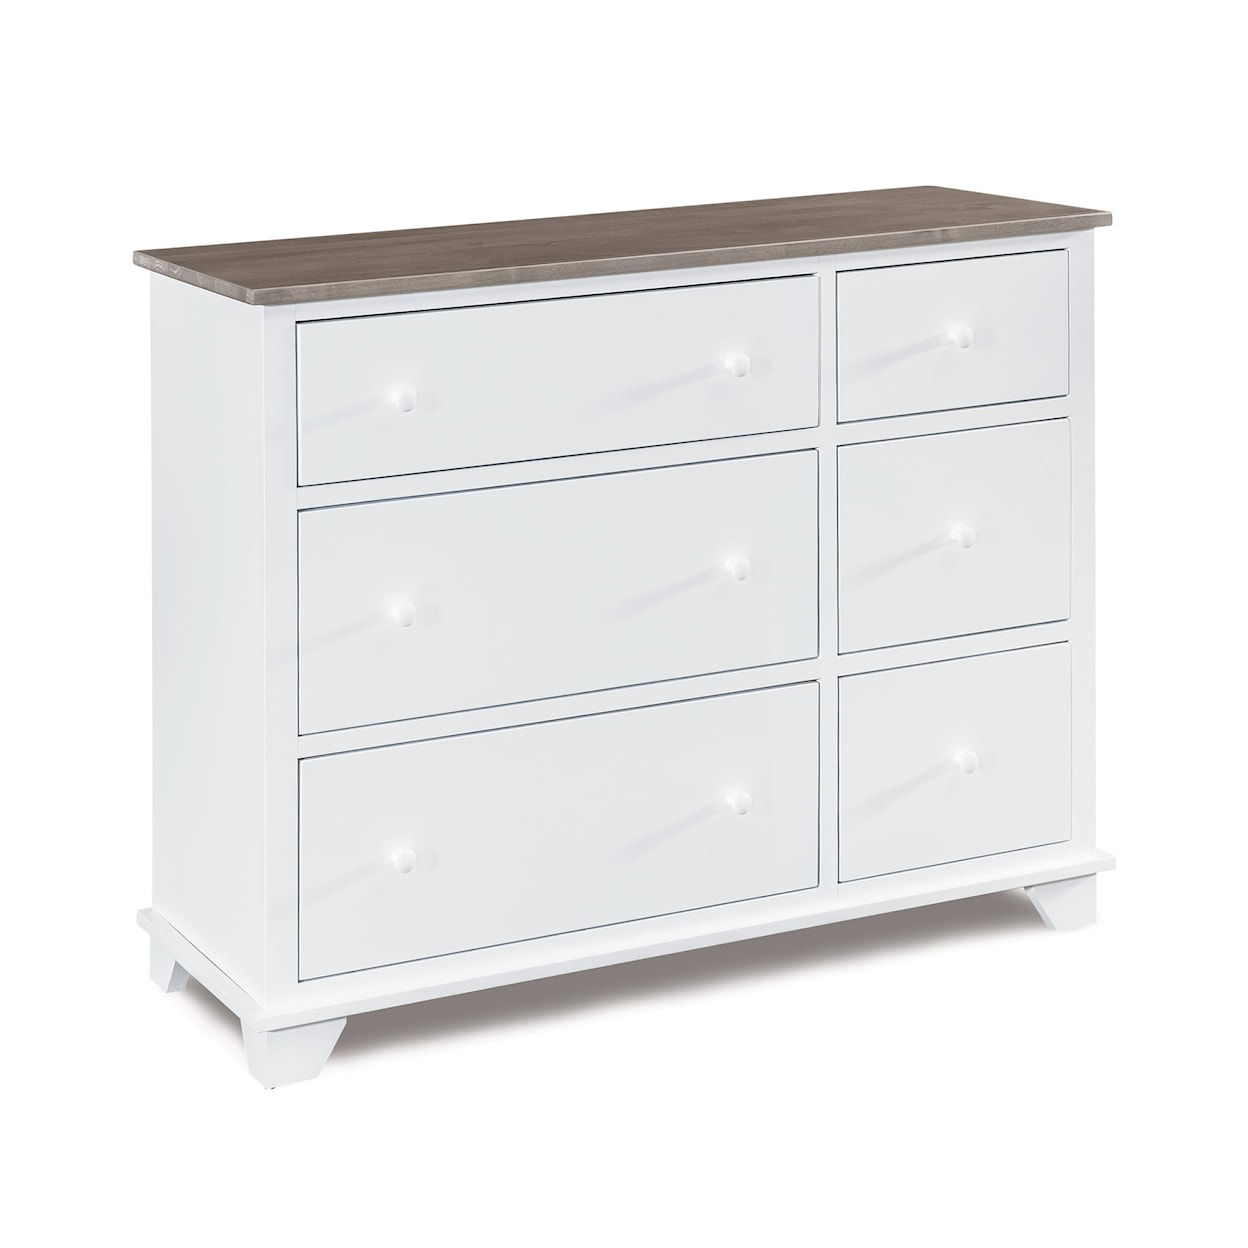 Archbold Furniture Portland 6-Drawer Combo Dresser